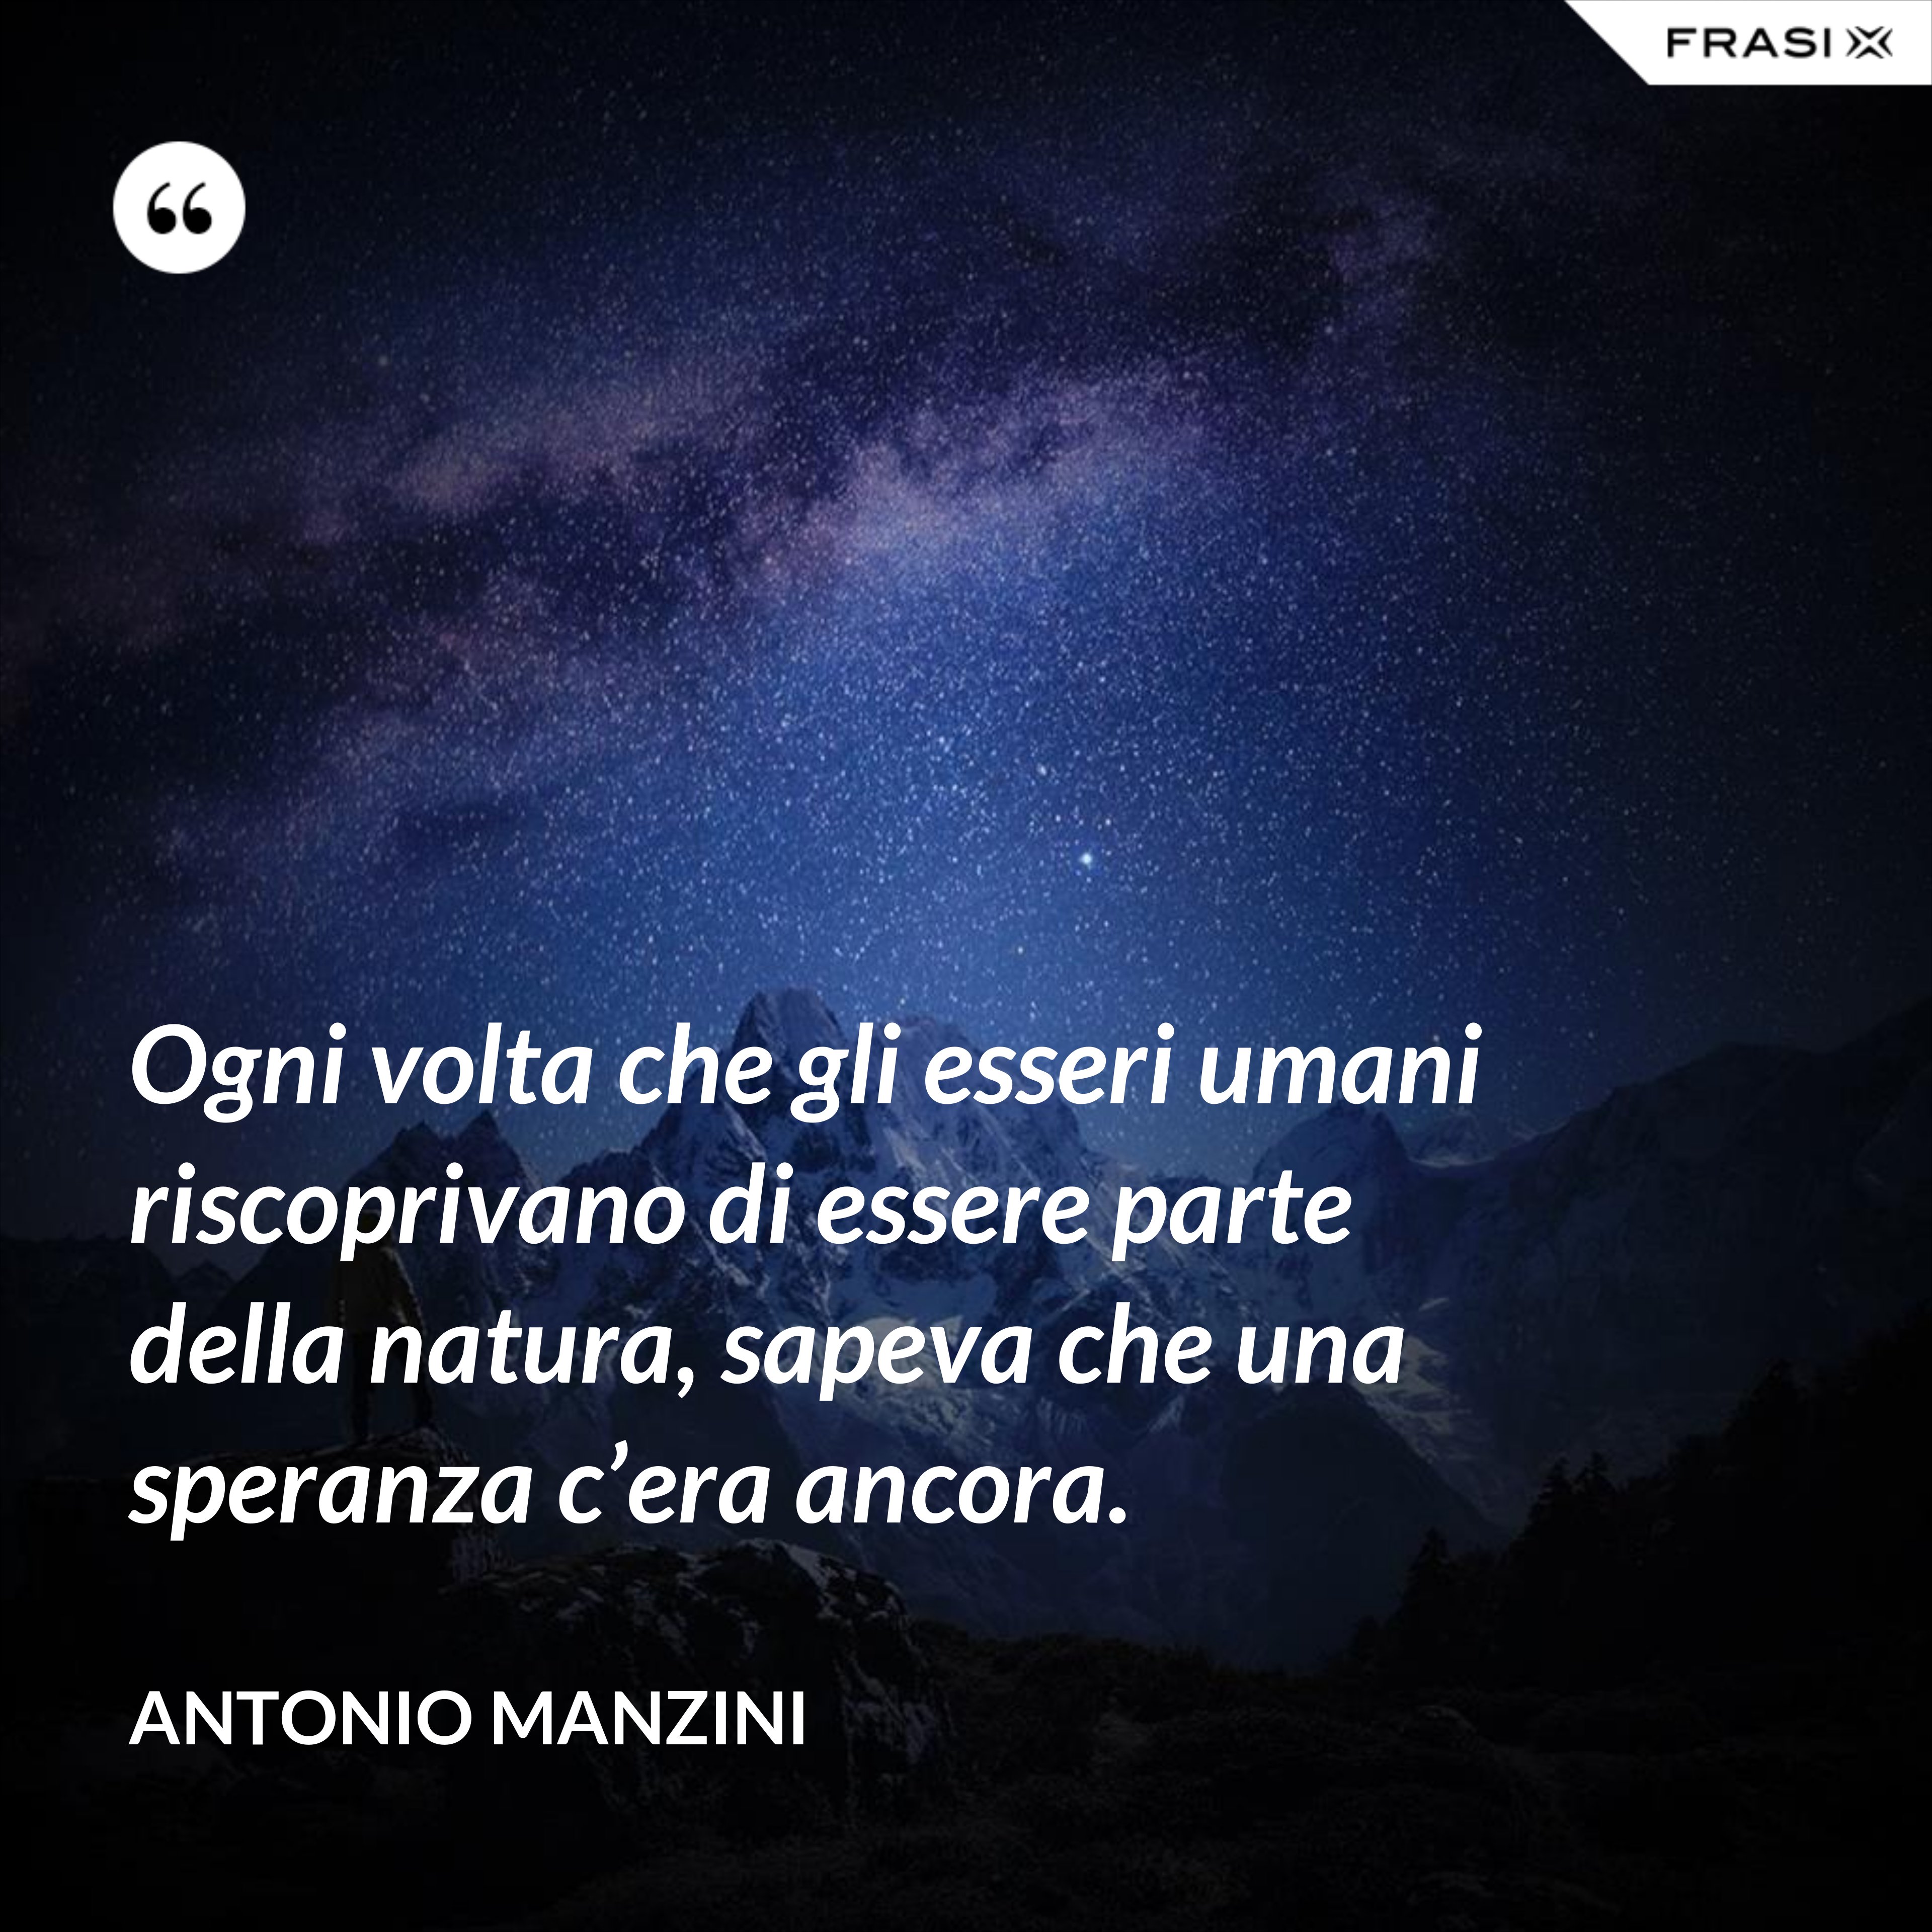 Ogni volta che gli esseri umani riscoprivano di essere parte della natura, sapeva che una speranza c’era ancora. - Antonio Manzini